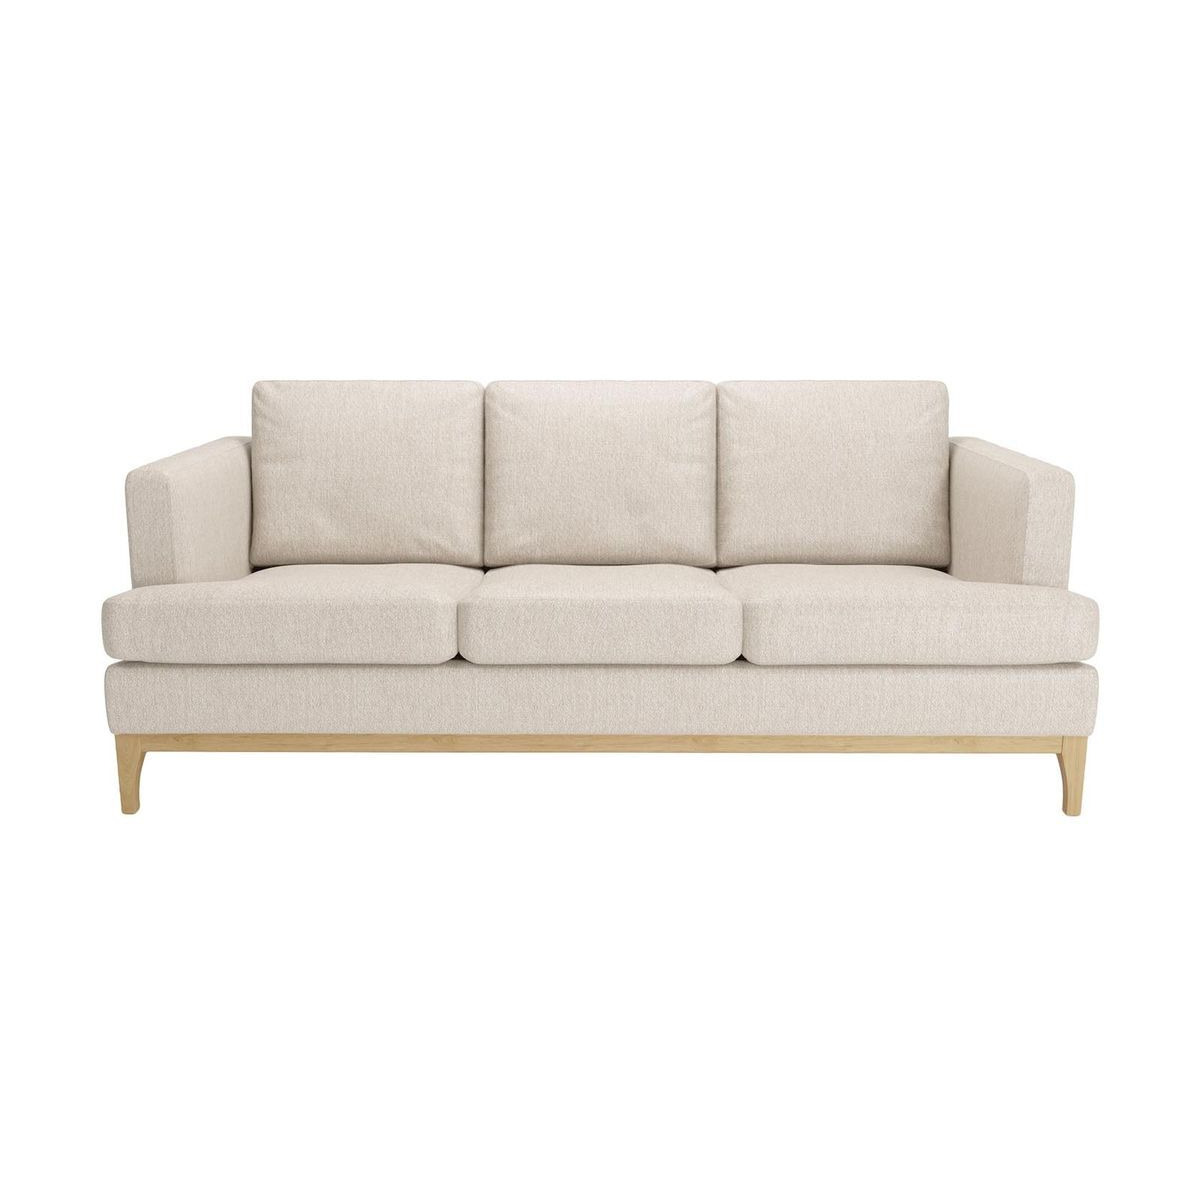 Scarlett Eco 3 Seater Sofa, Cream, Leg colour: like oak - image 1